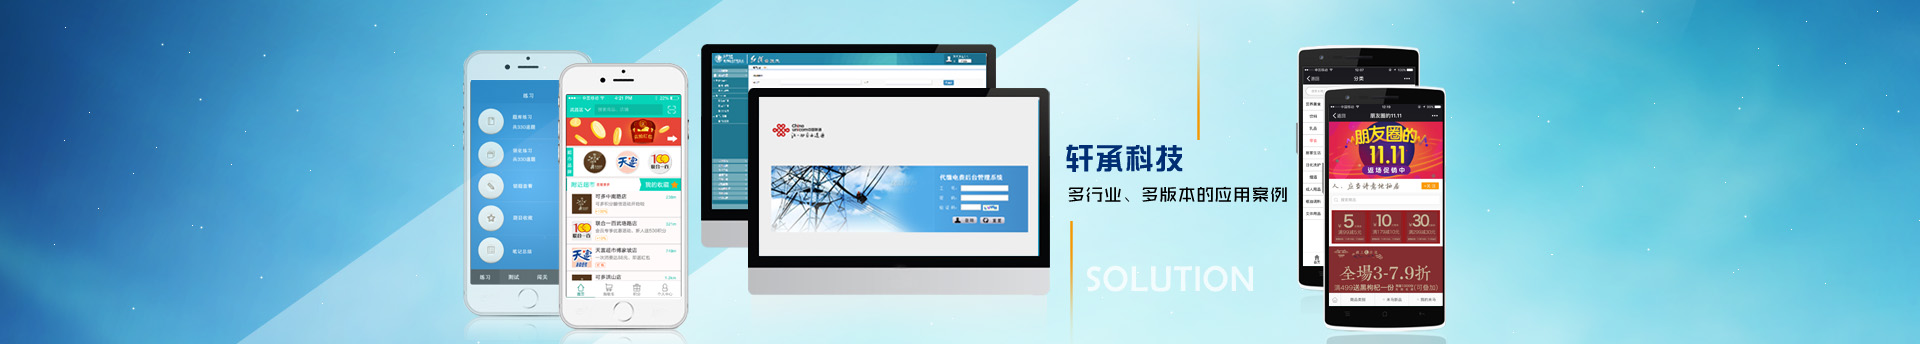 武汉软件开发-武汉网站建设-武汉APP开发-武汉微信小程序开发-武汉数据可视化开发—数据可视化开发